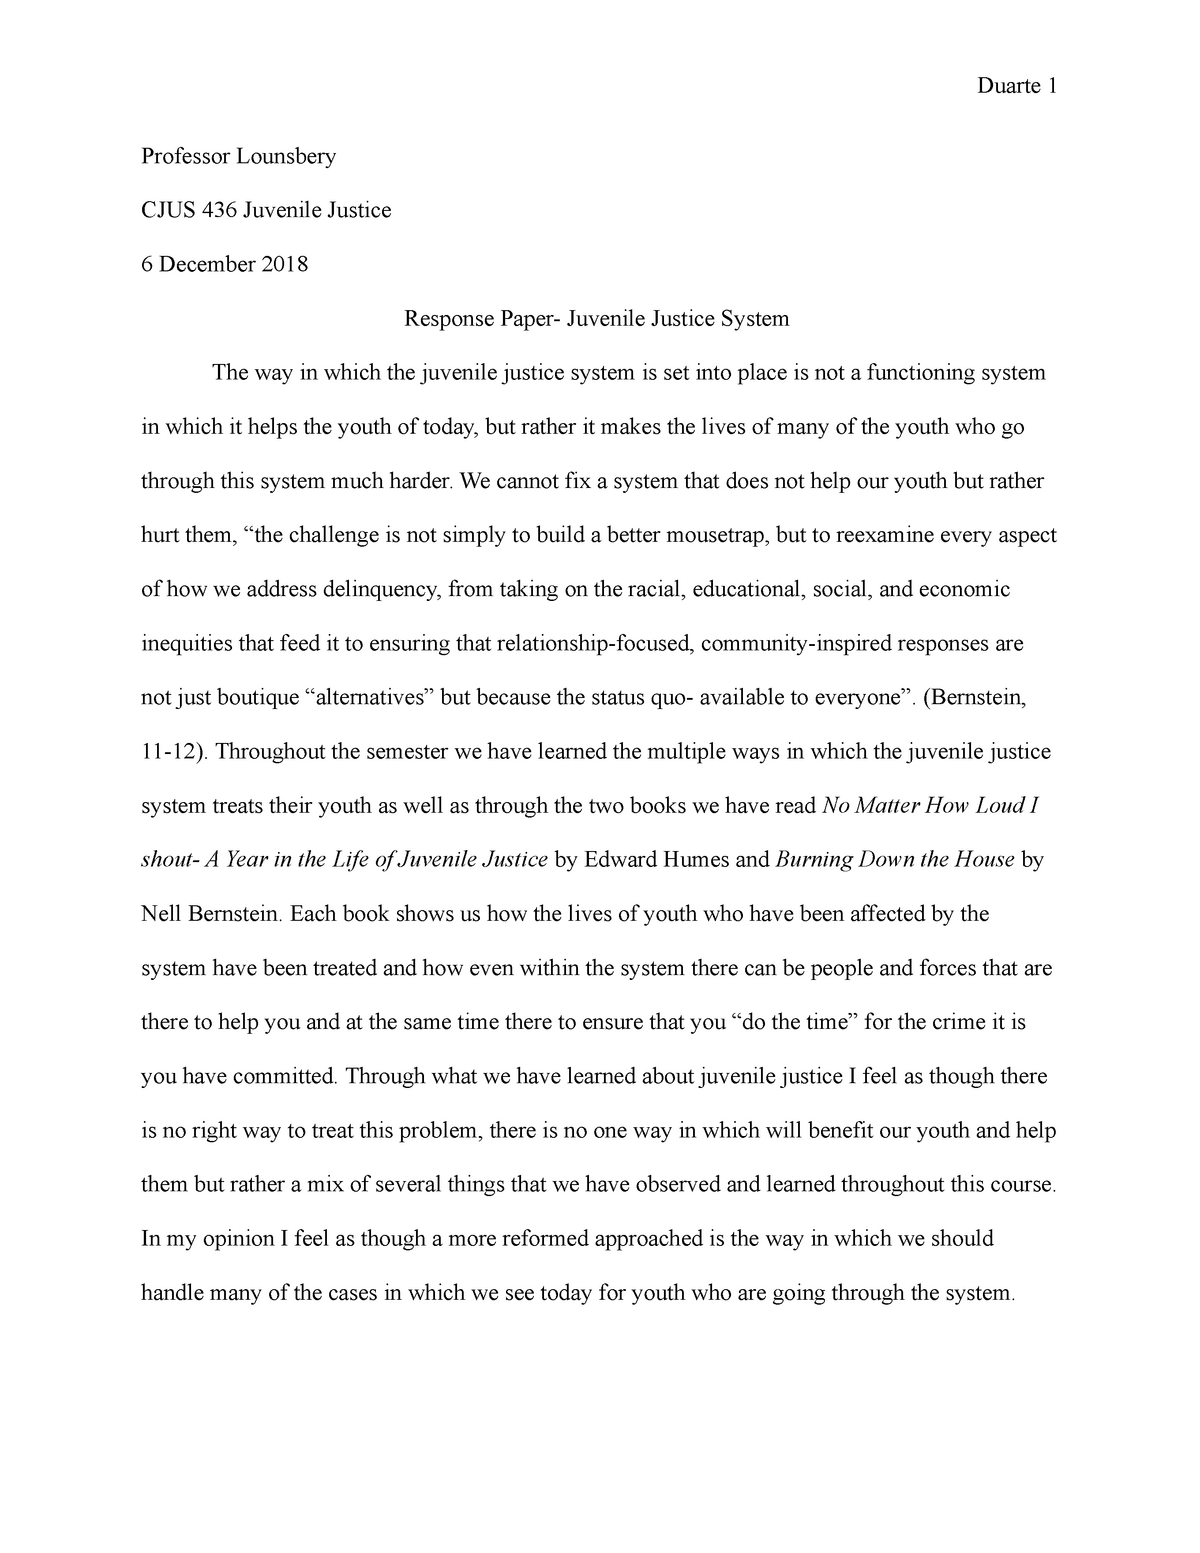 reflection essay grader